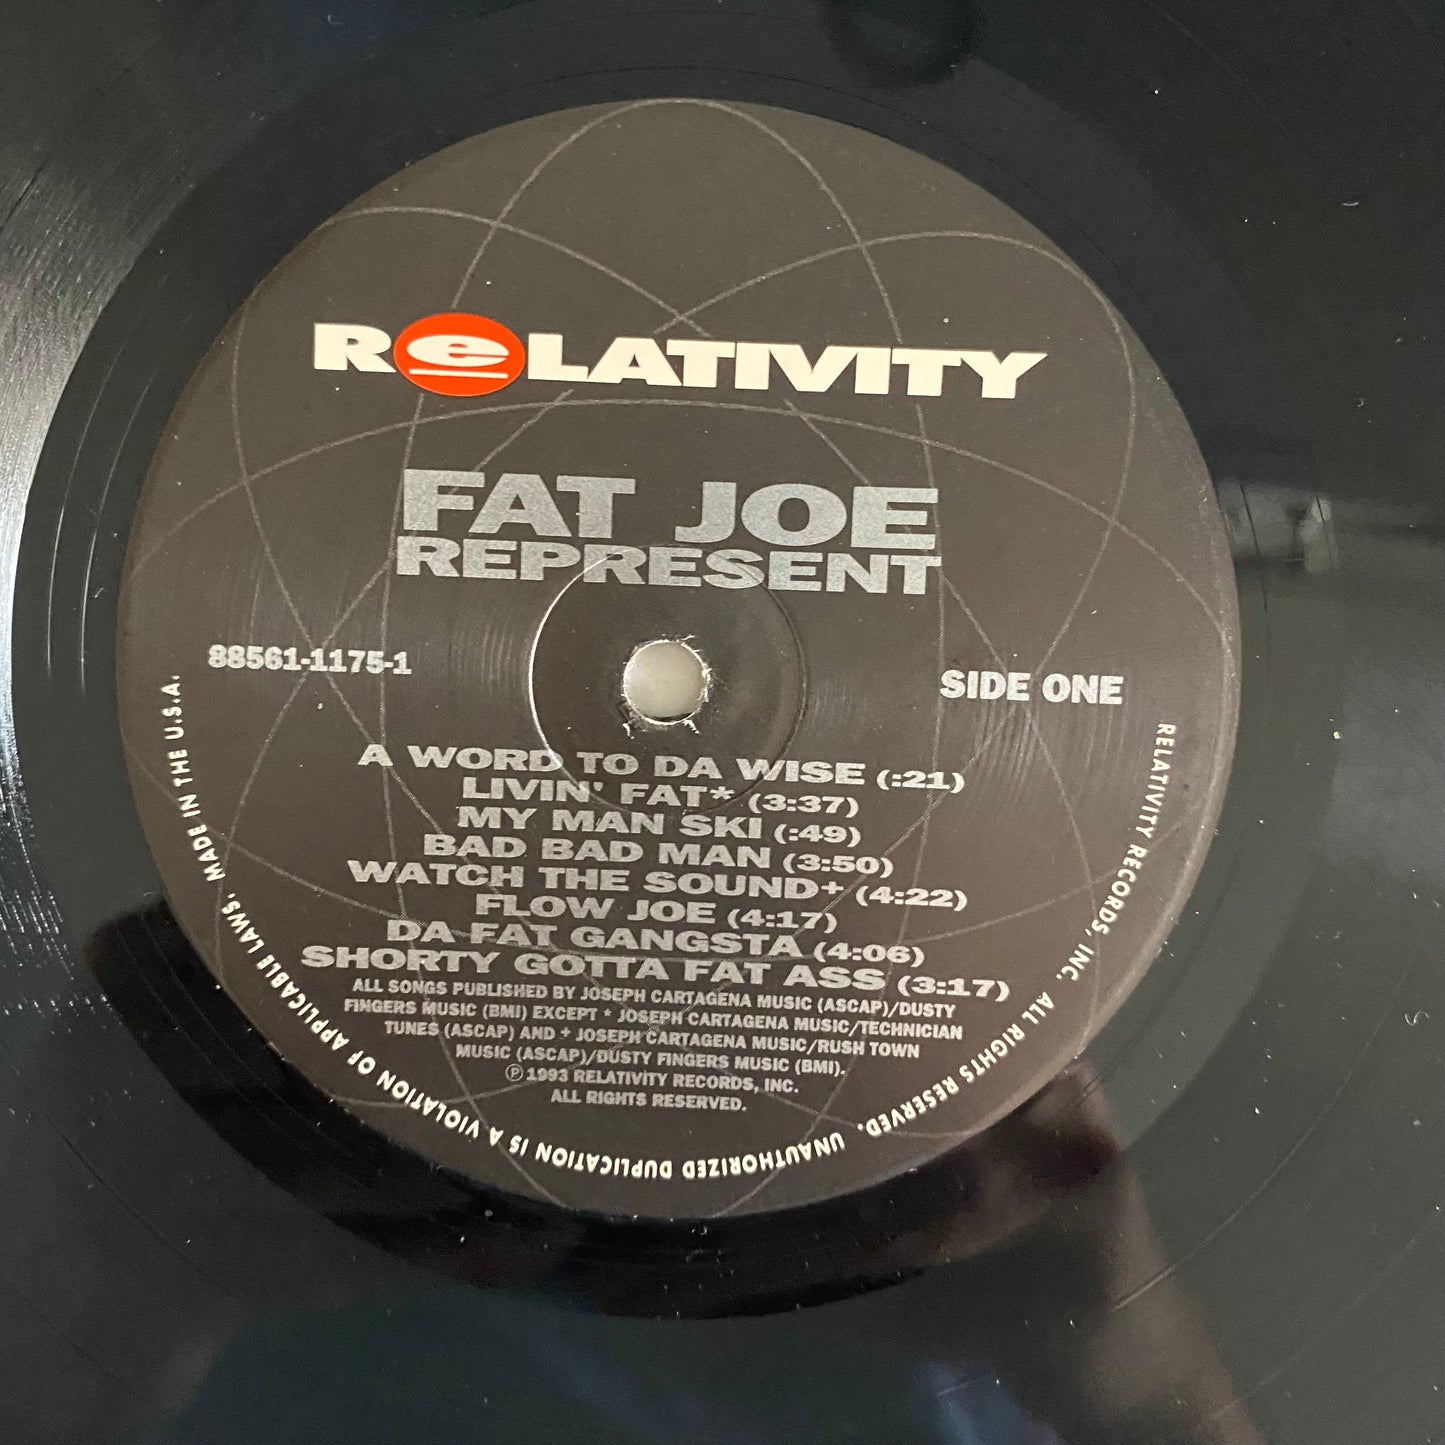 Fat Joe Da Gangsta* - Represent (LP, Album). HIP-HOP